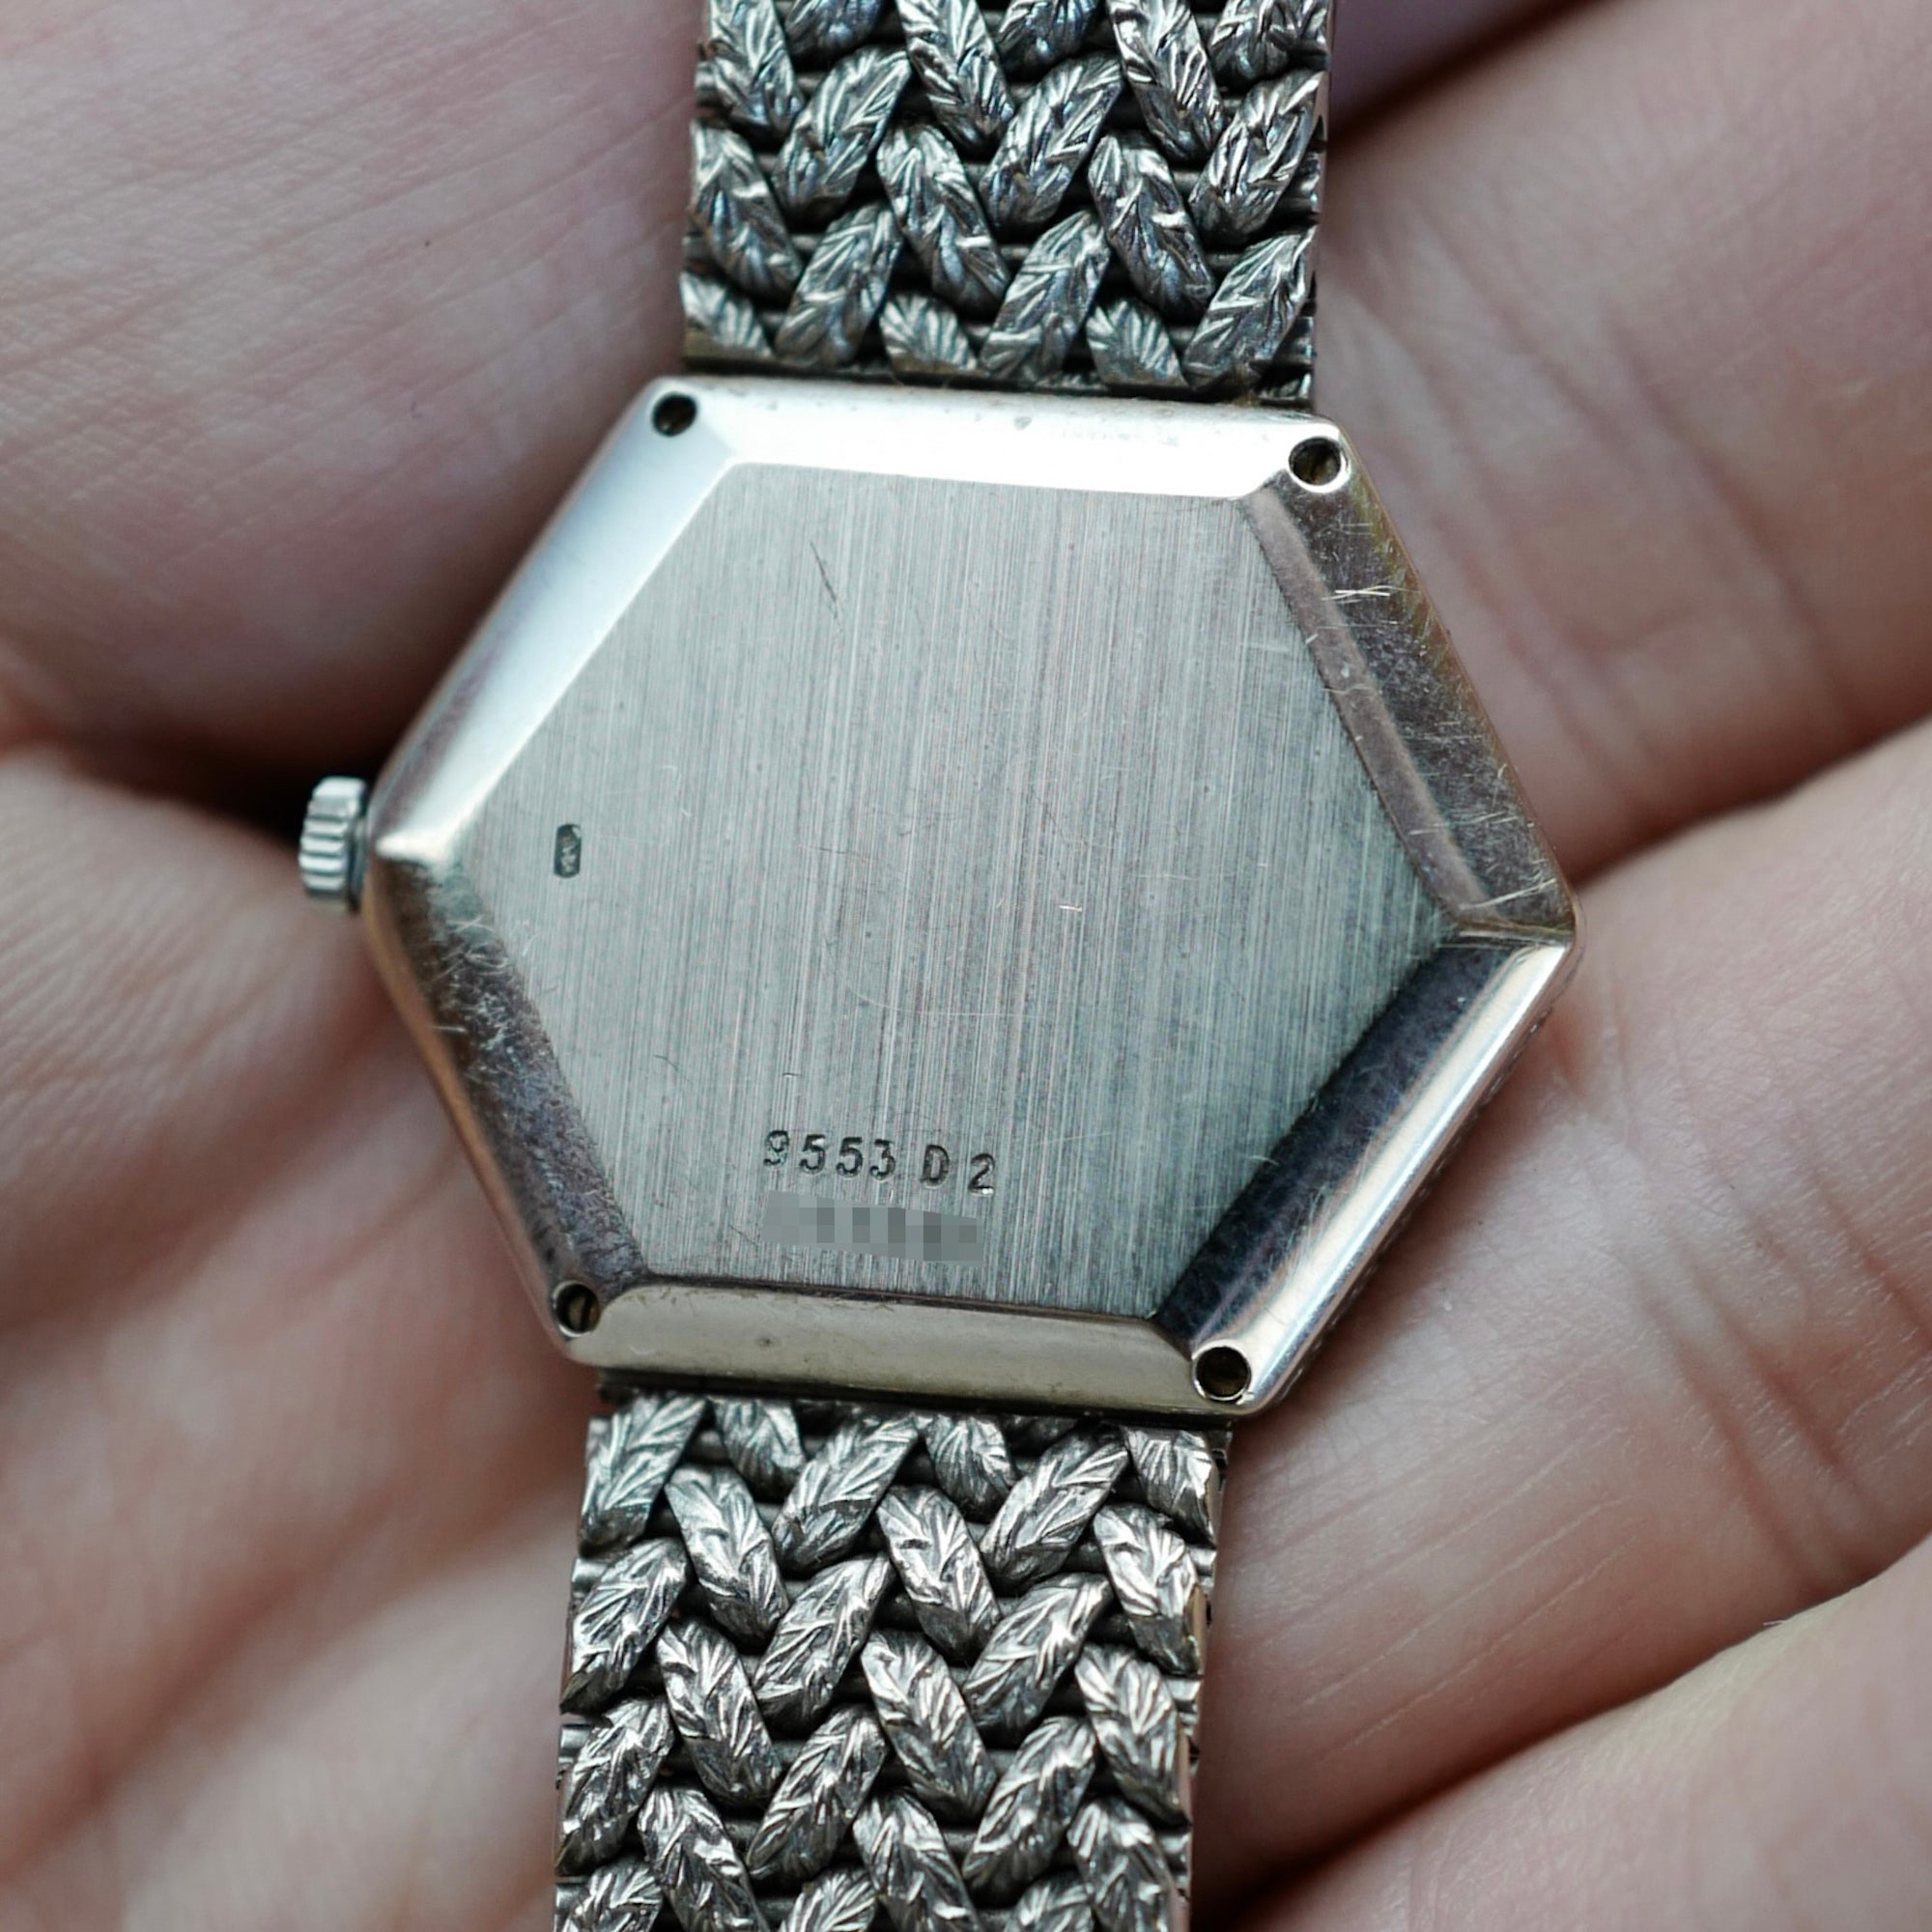 Piaget White Gold Lapis Watch Ref. 9553